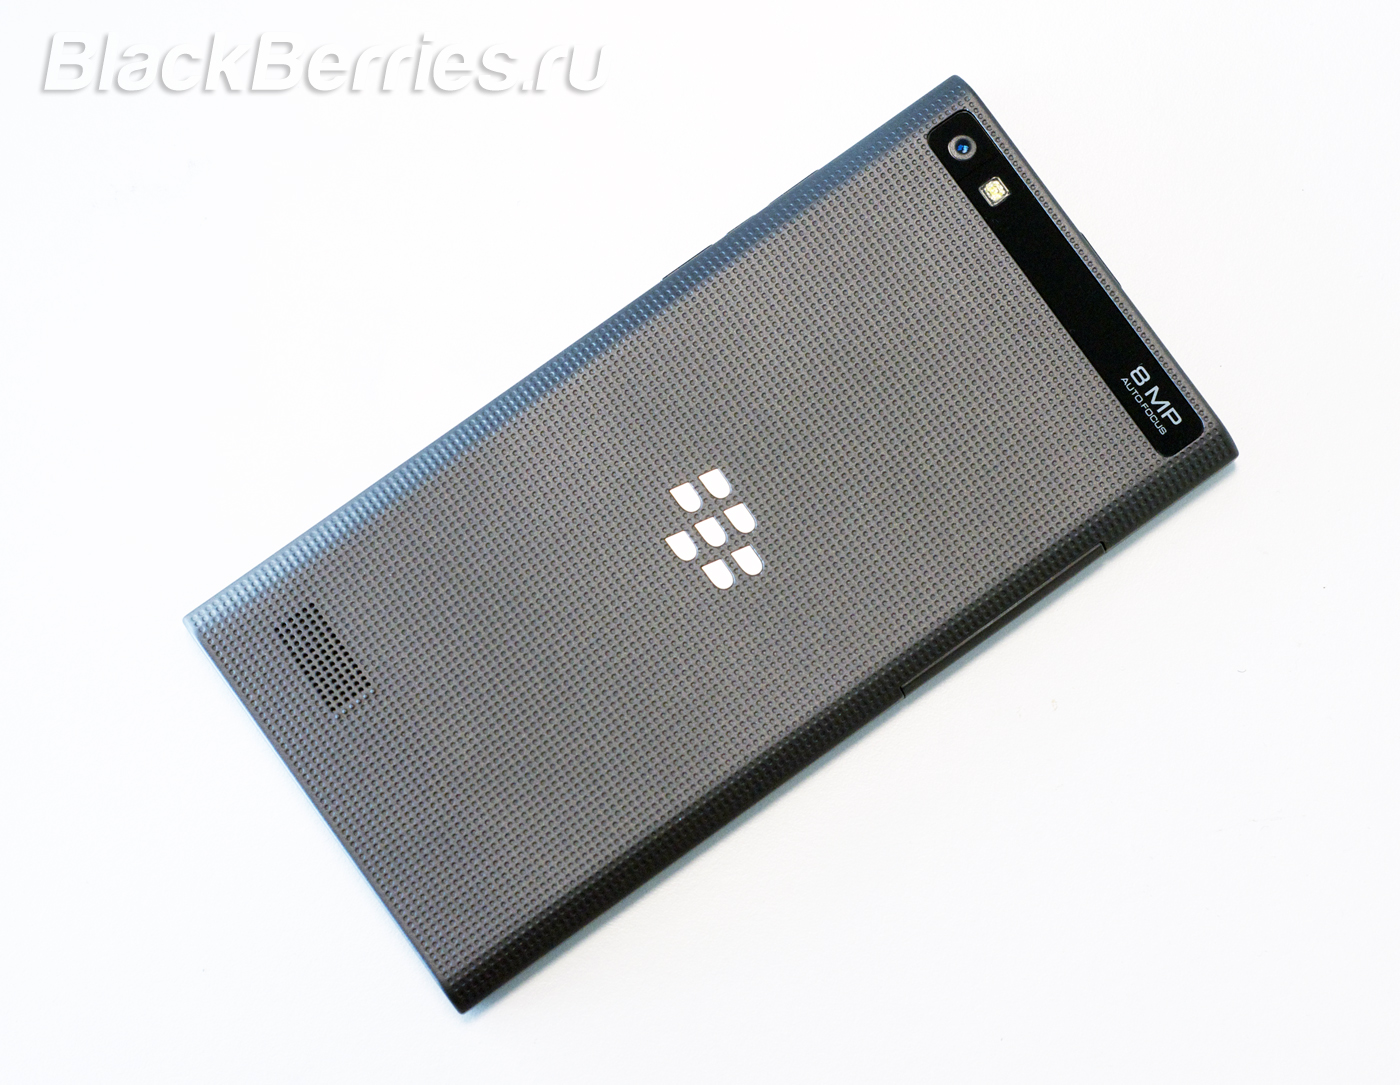 BlackBerry-Leap-5